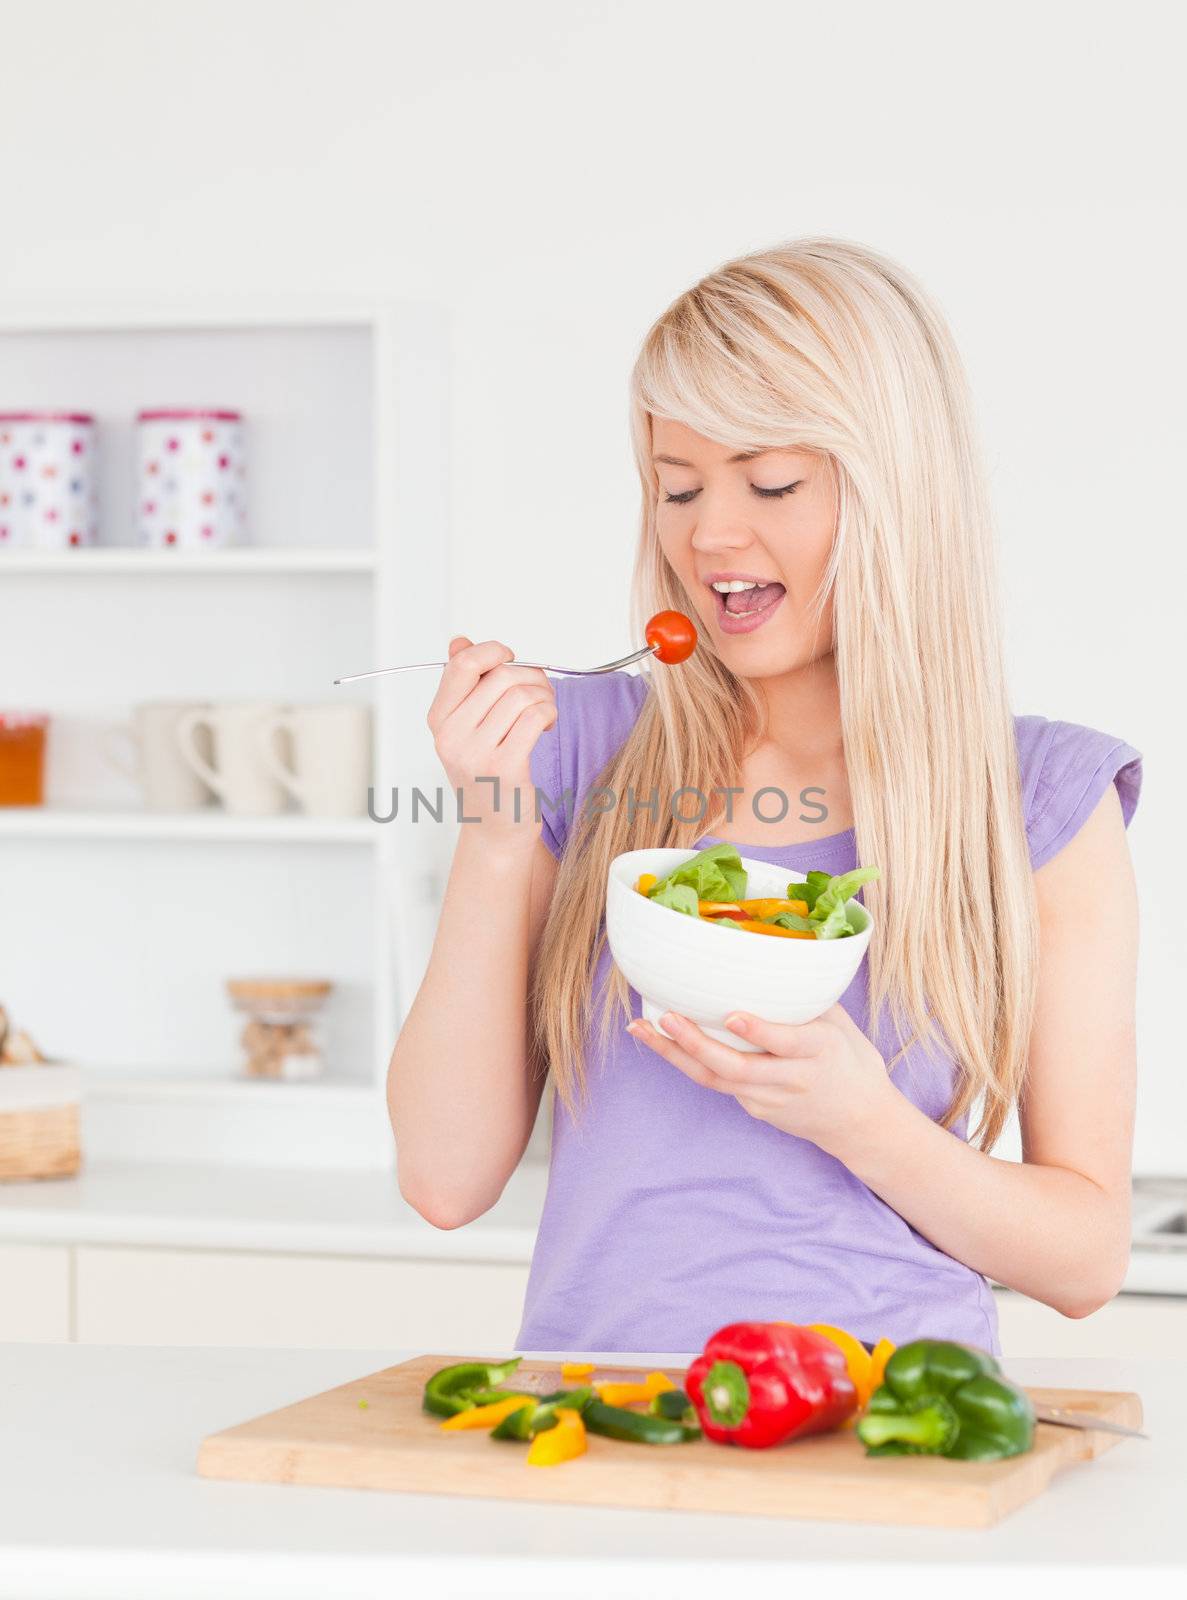 Good looking female eating her salad by Wavebreakmedia